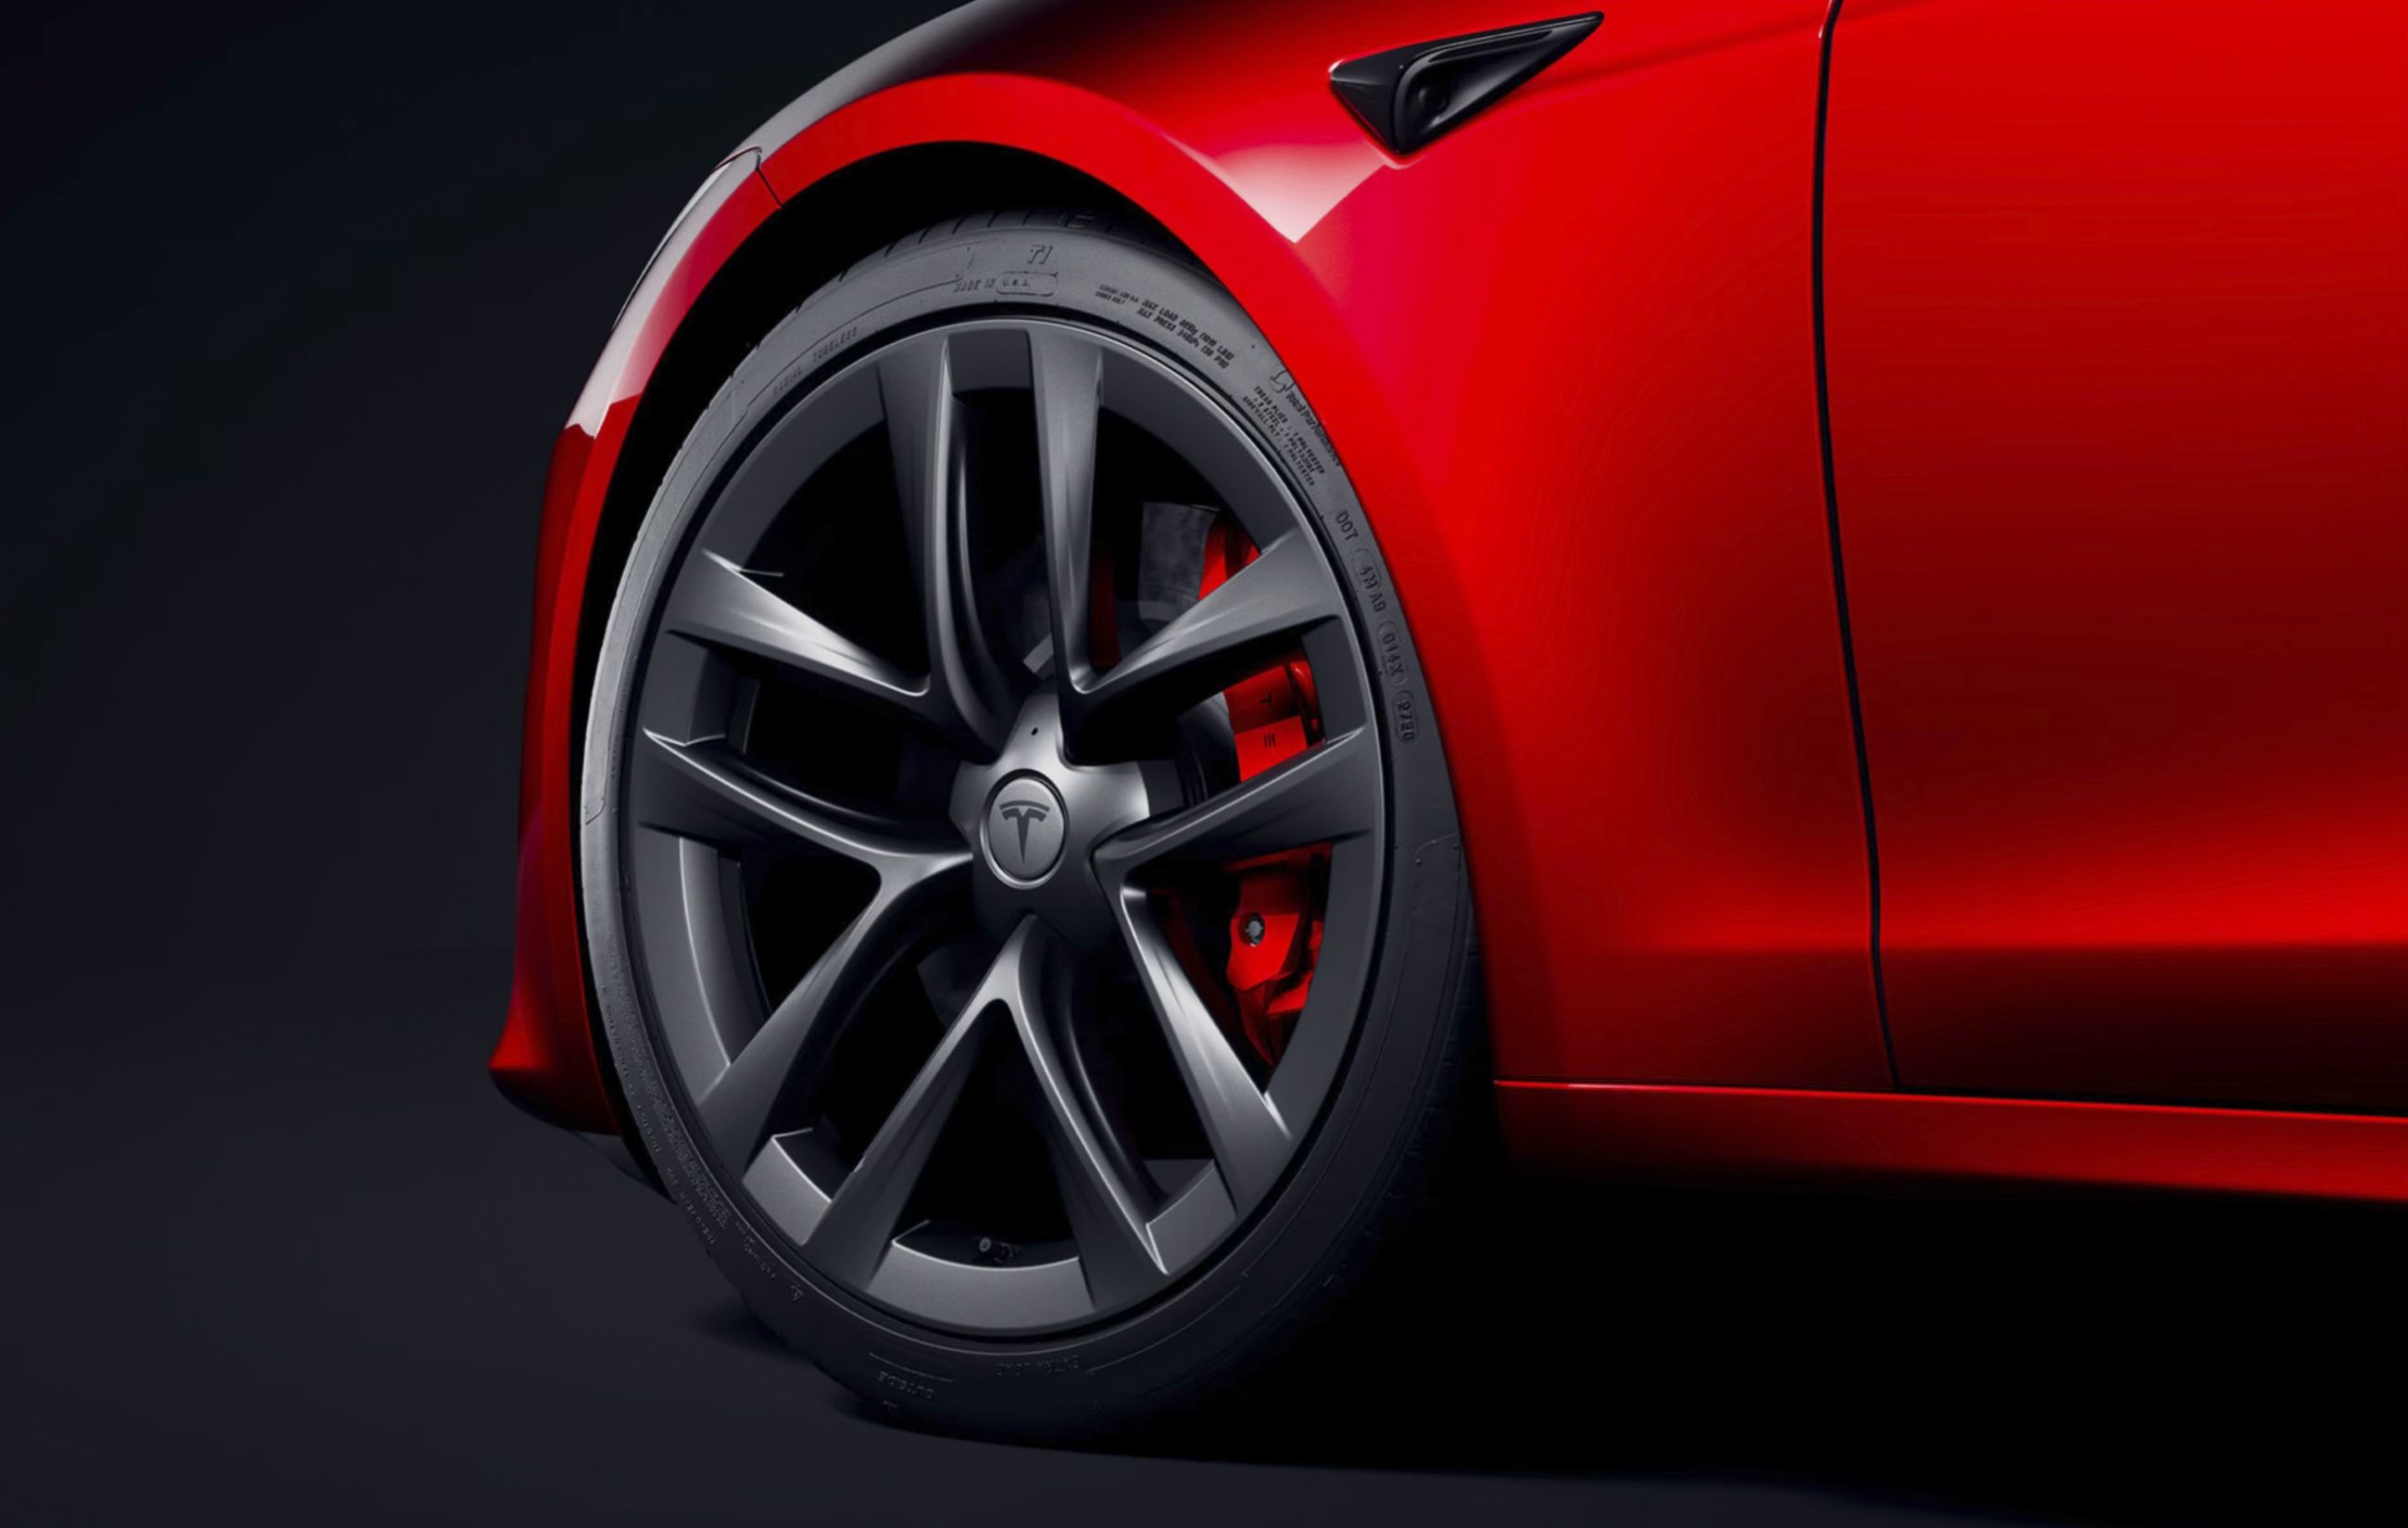  Tesla introduce hasta un total de 8 cámaras en sus automóviles con el objetivo grabar todo lo que sucede a su alrededor. Además, se puede configurar el Modo Centinela para que sigan grabando una vez estacionado el vehículo. 